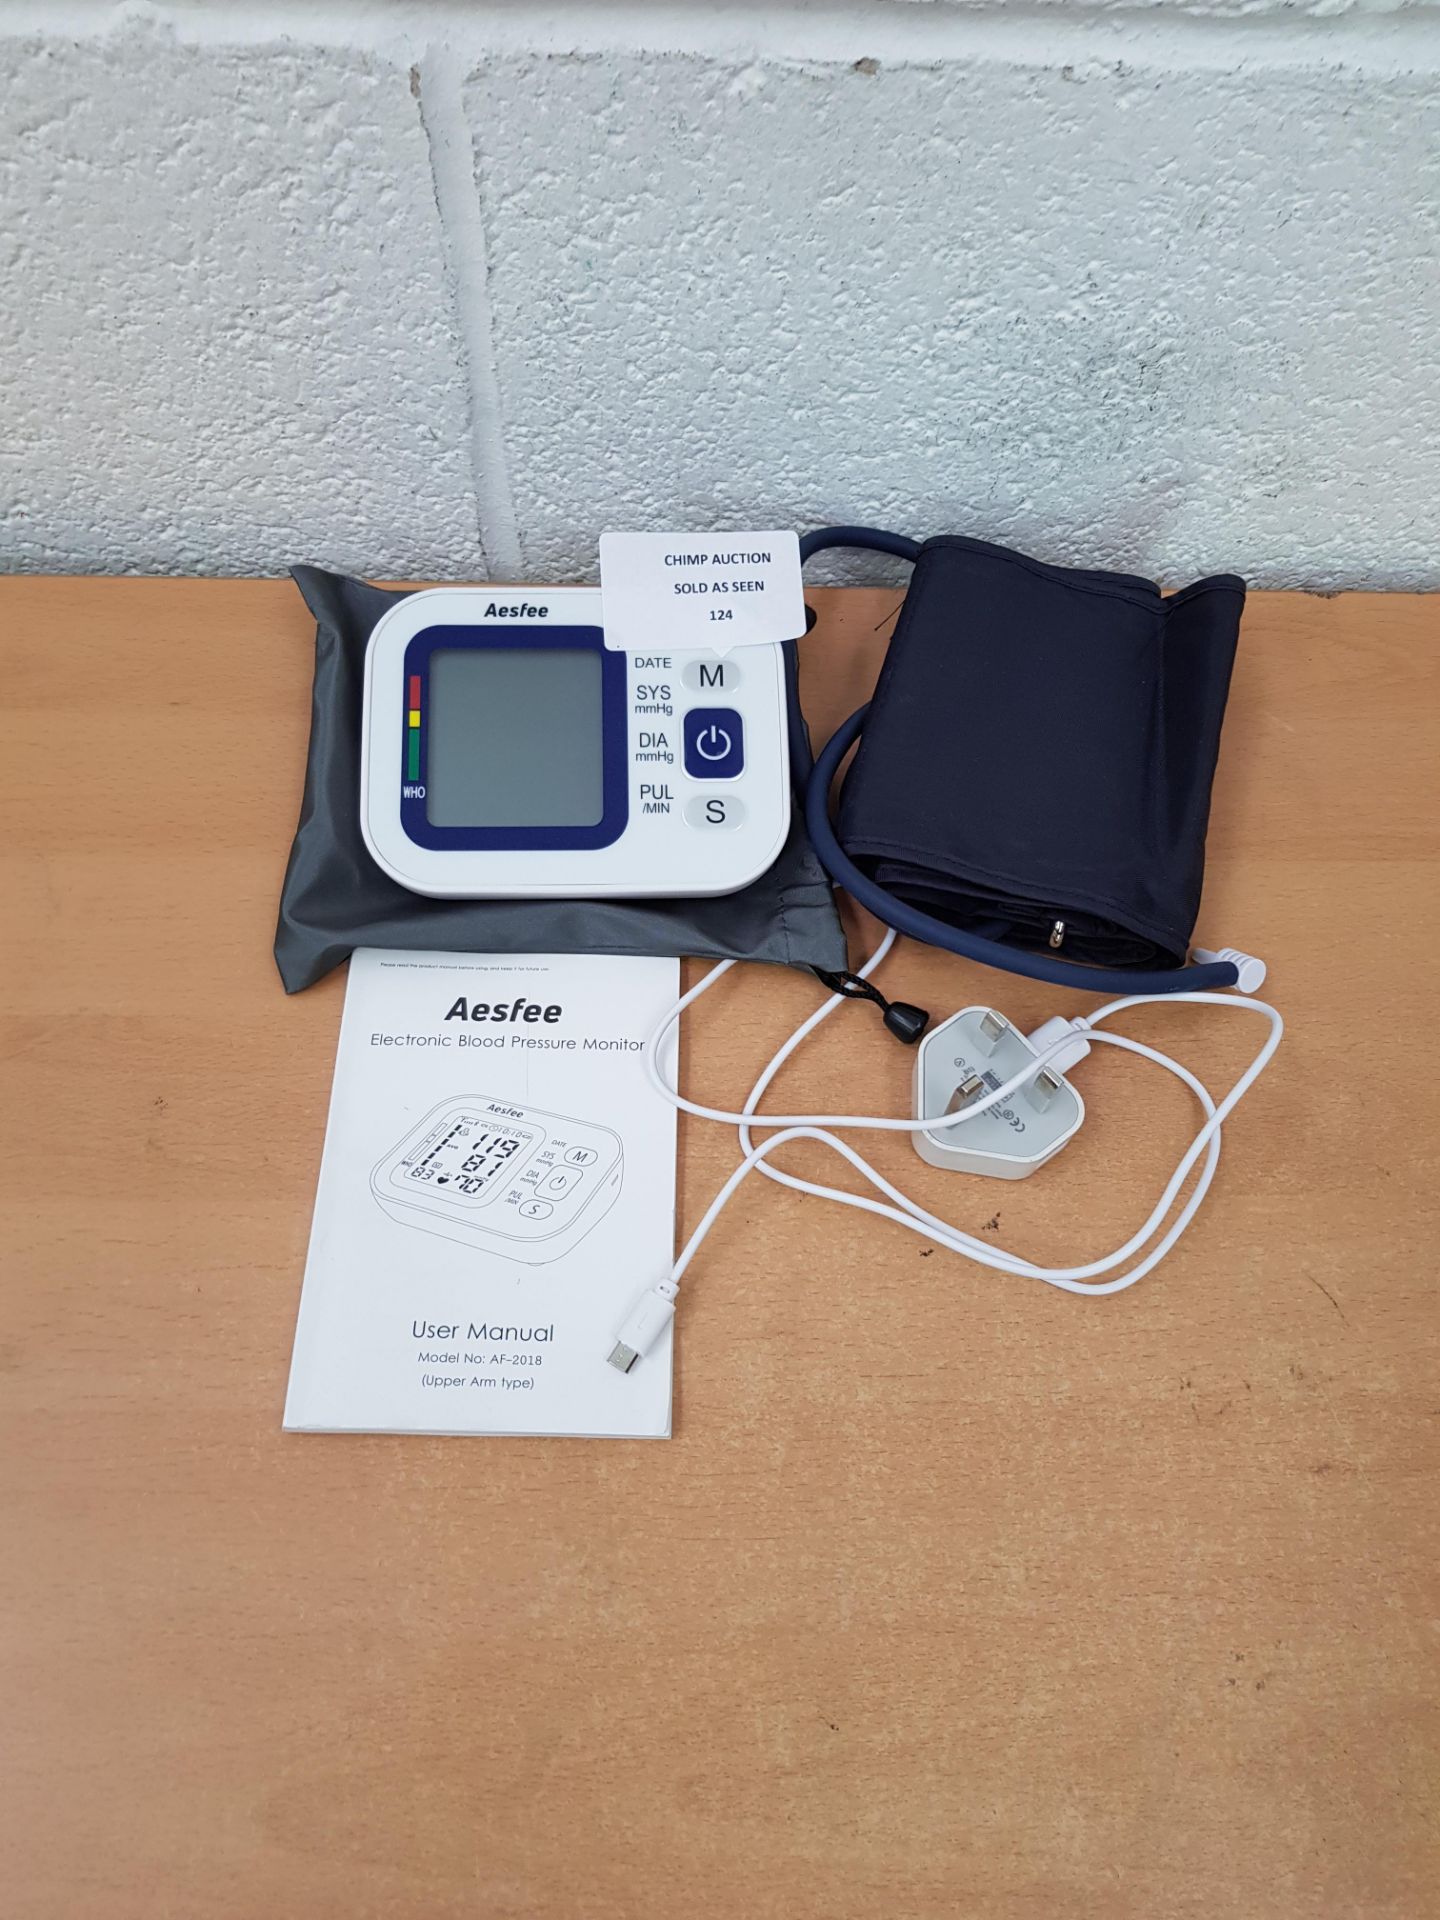 Aesfee Blood Pressure Monitor